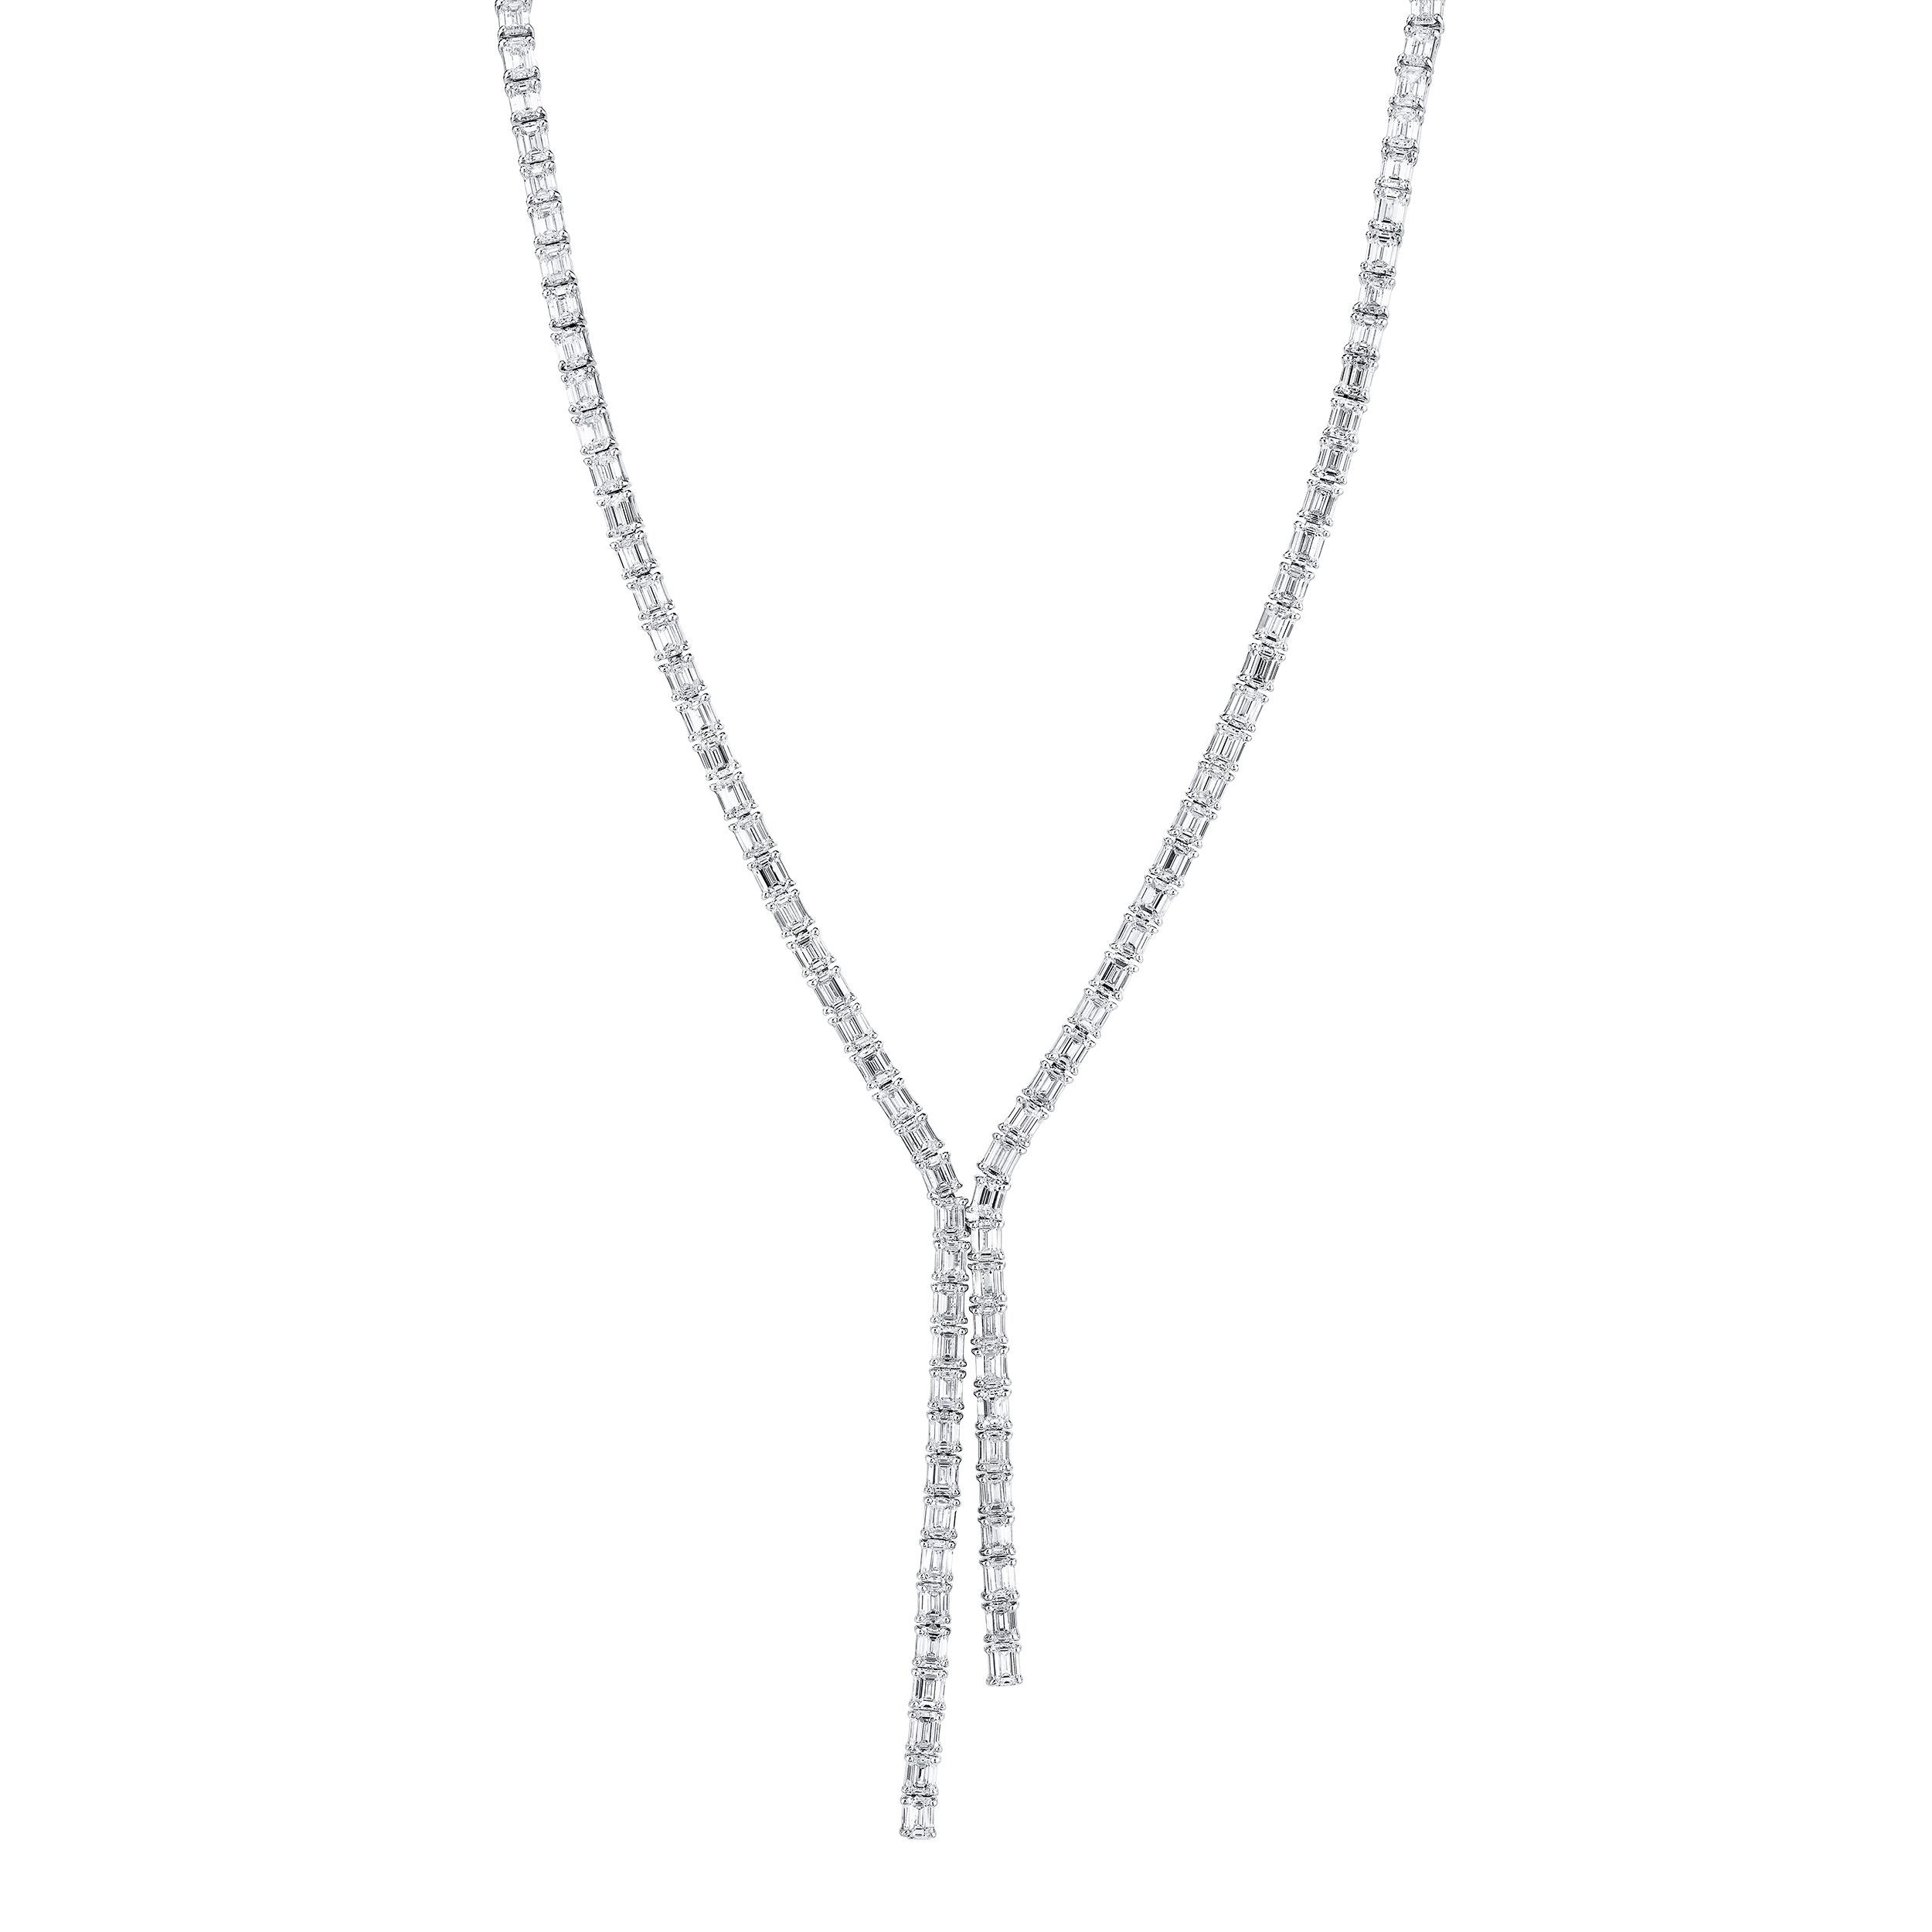 Le Vian Couture Emerald Necklace 3/4 ct tw Diamonds Platinum 18